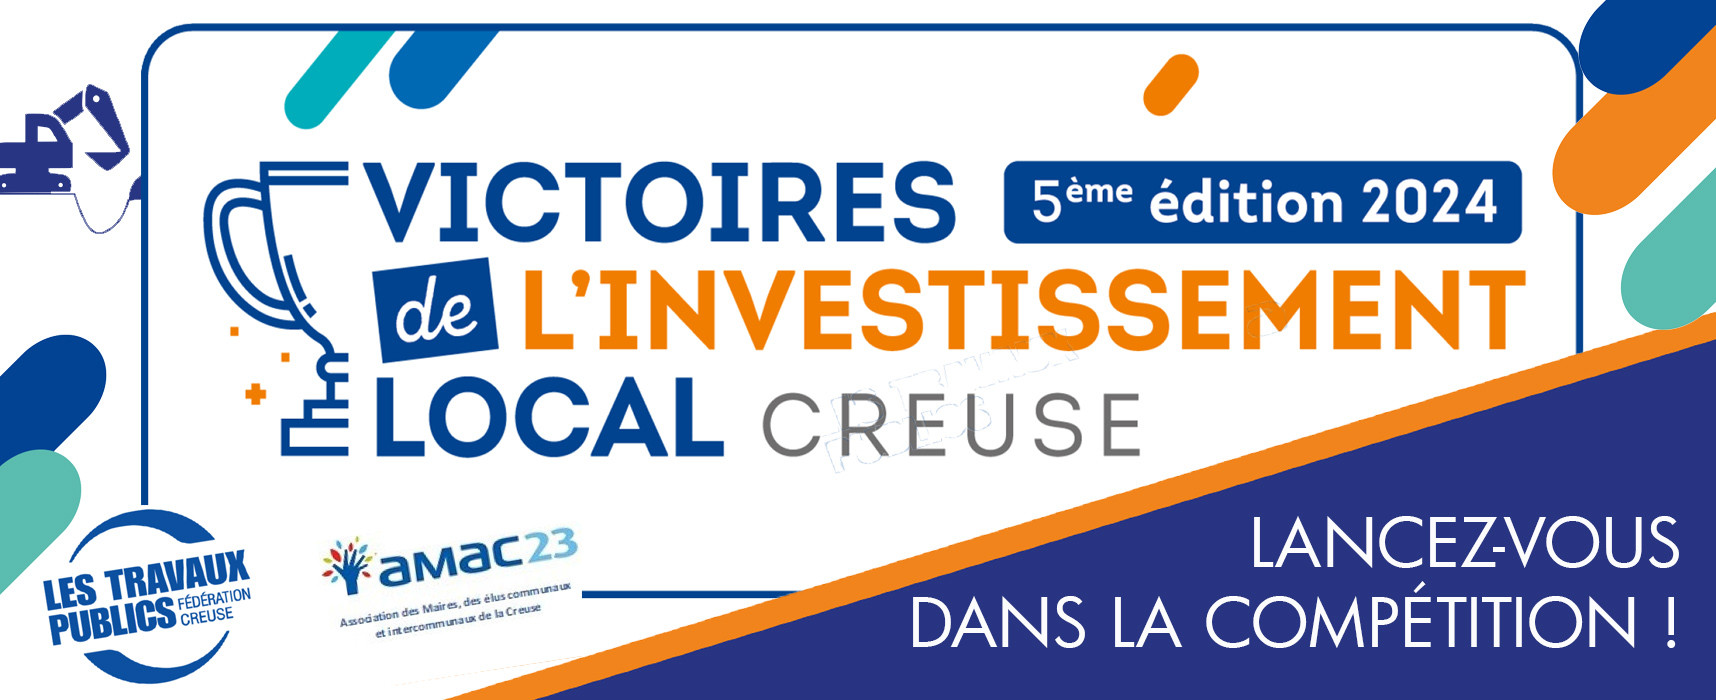 Les 5e Victoires de l’Investissement Local de la Creuse 2024, lancez-vous dans la compétition !